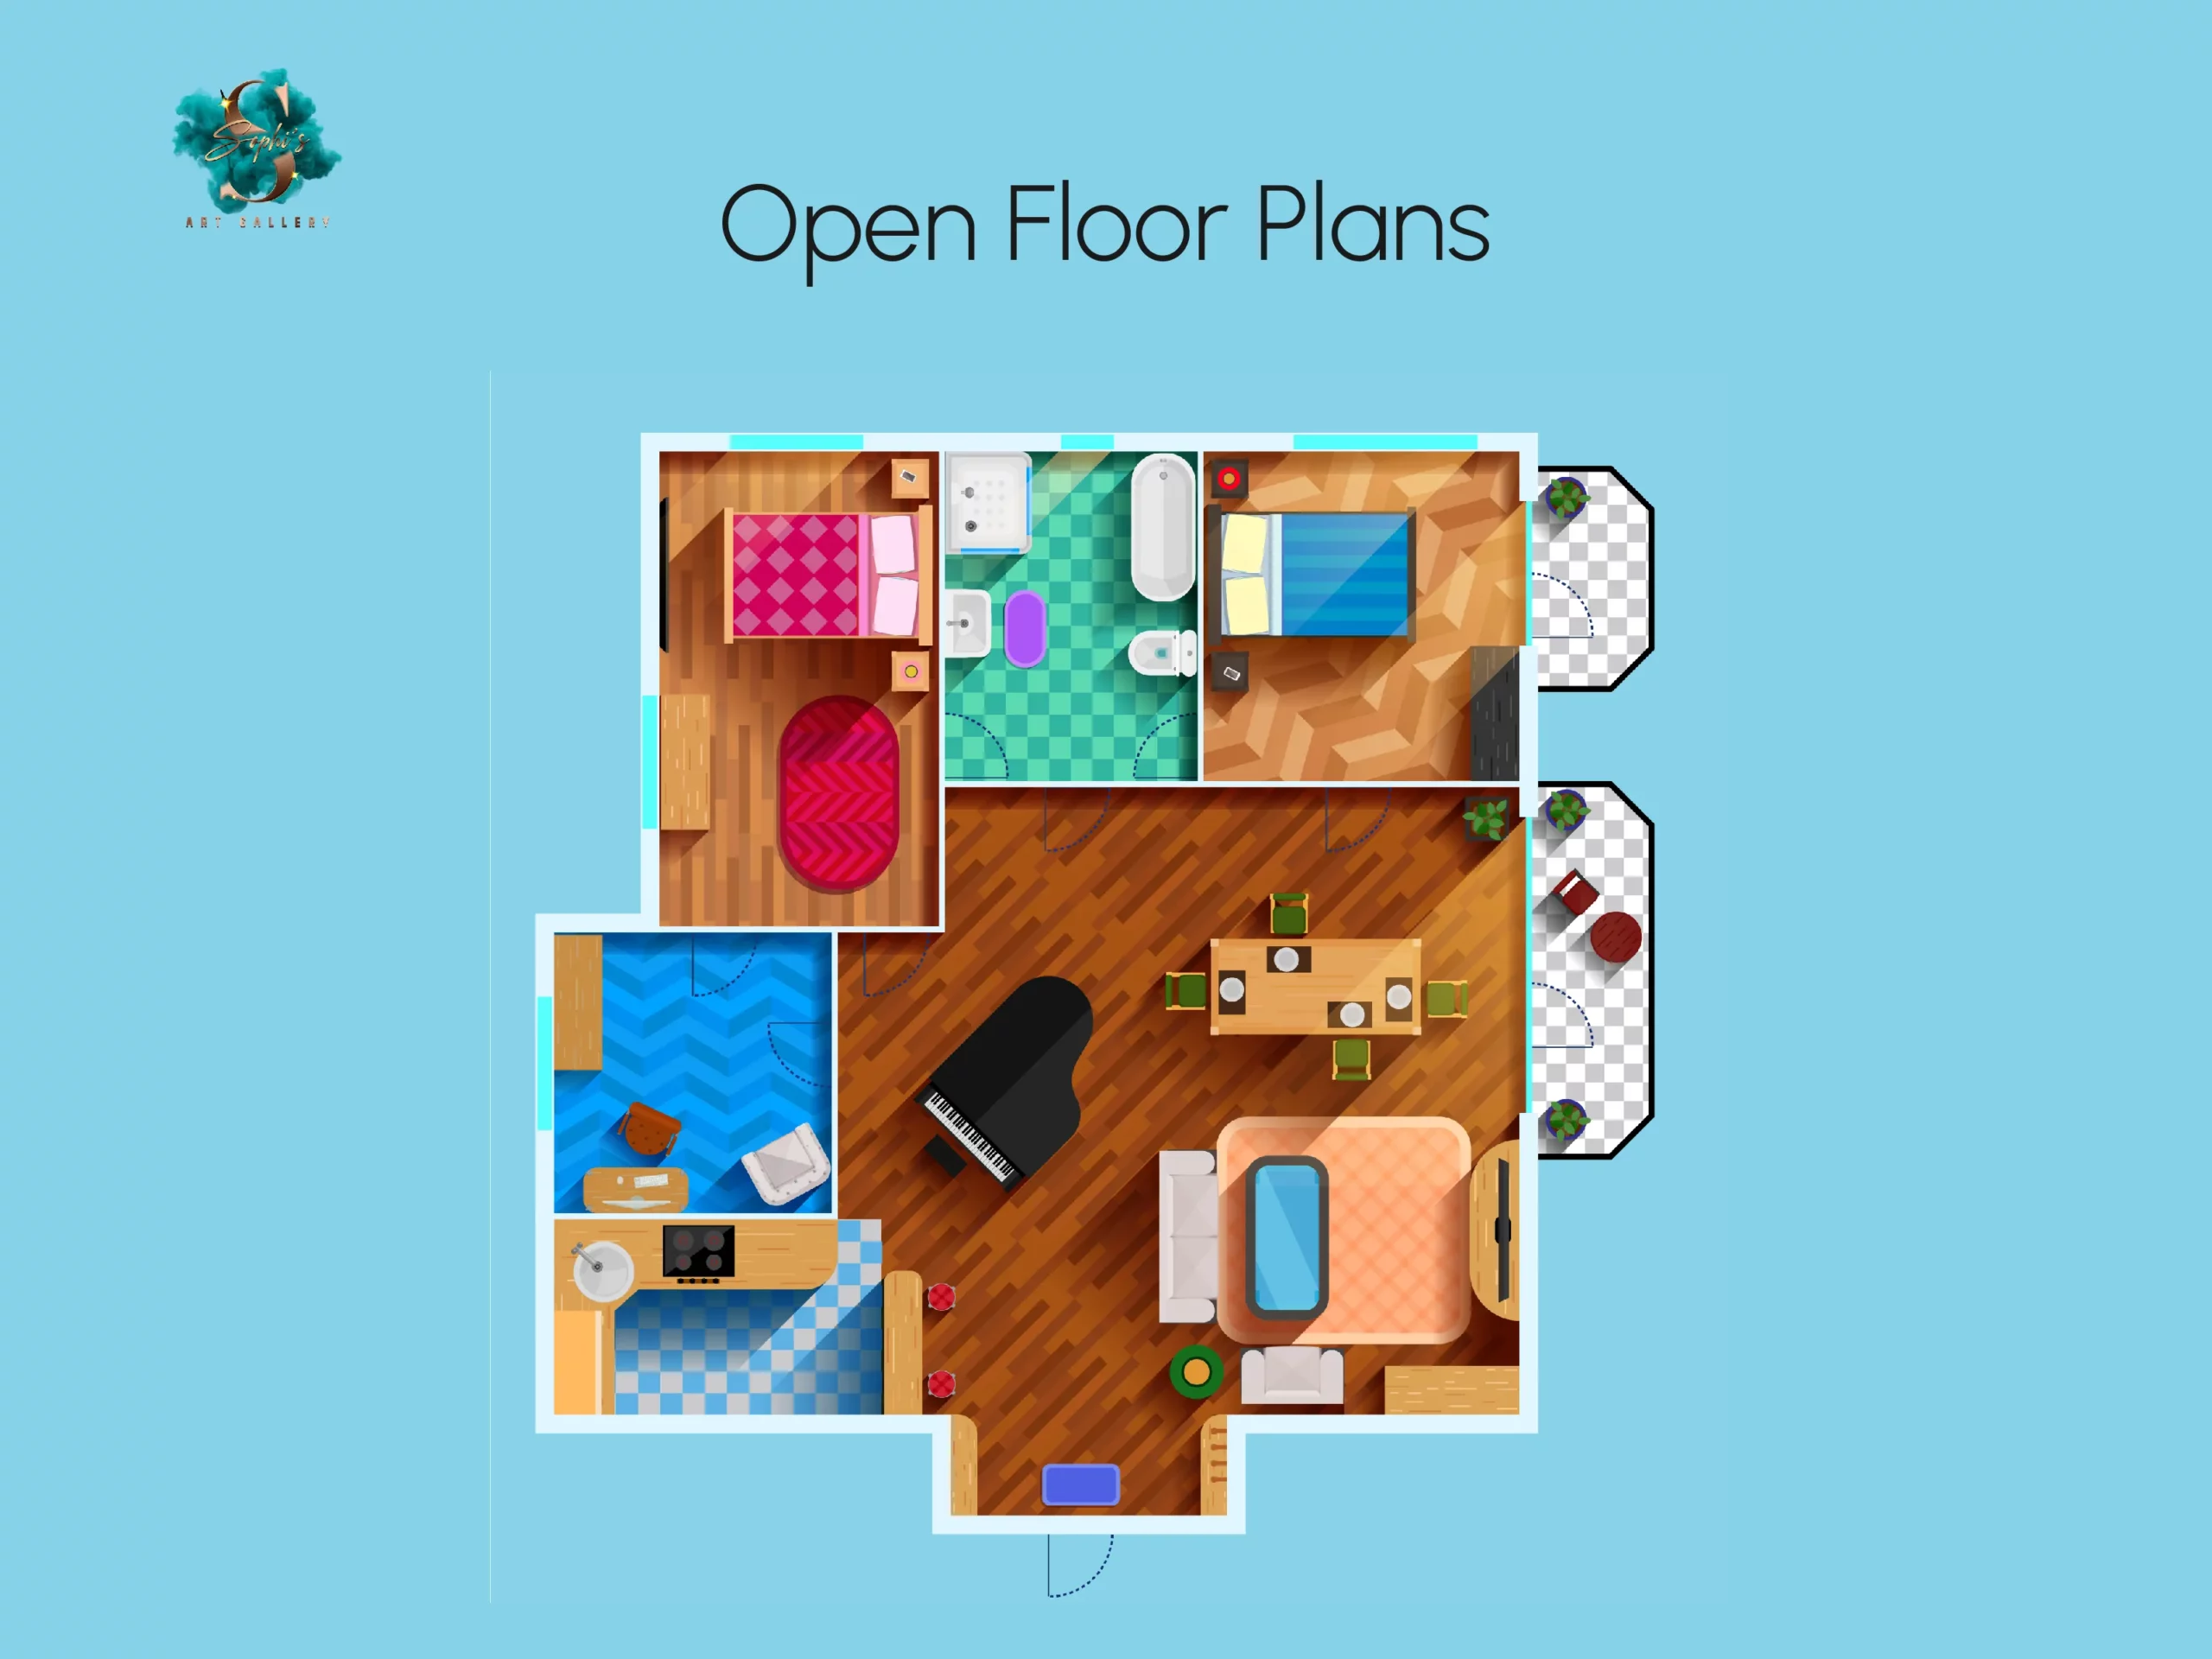 Open floor plans